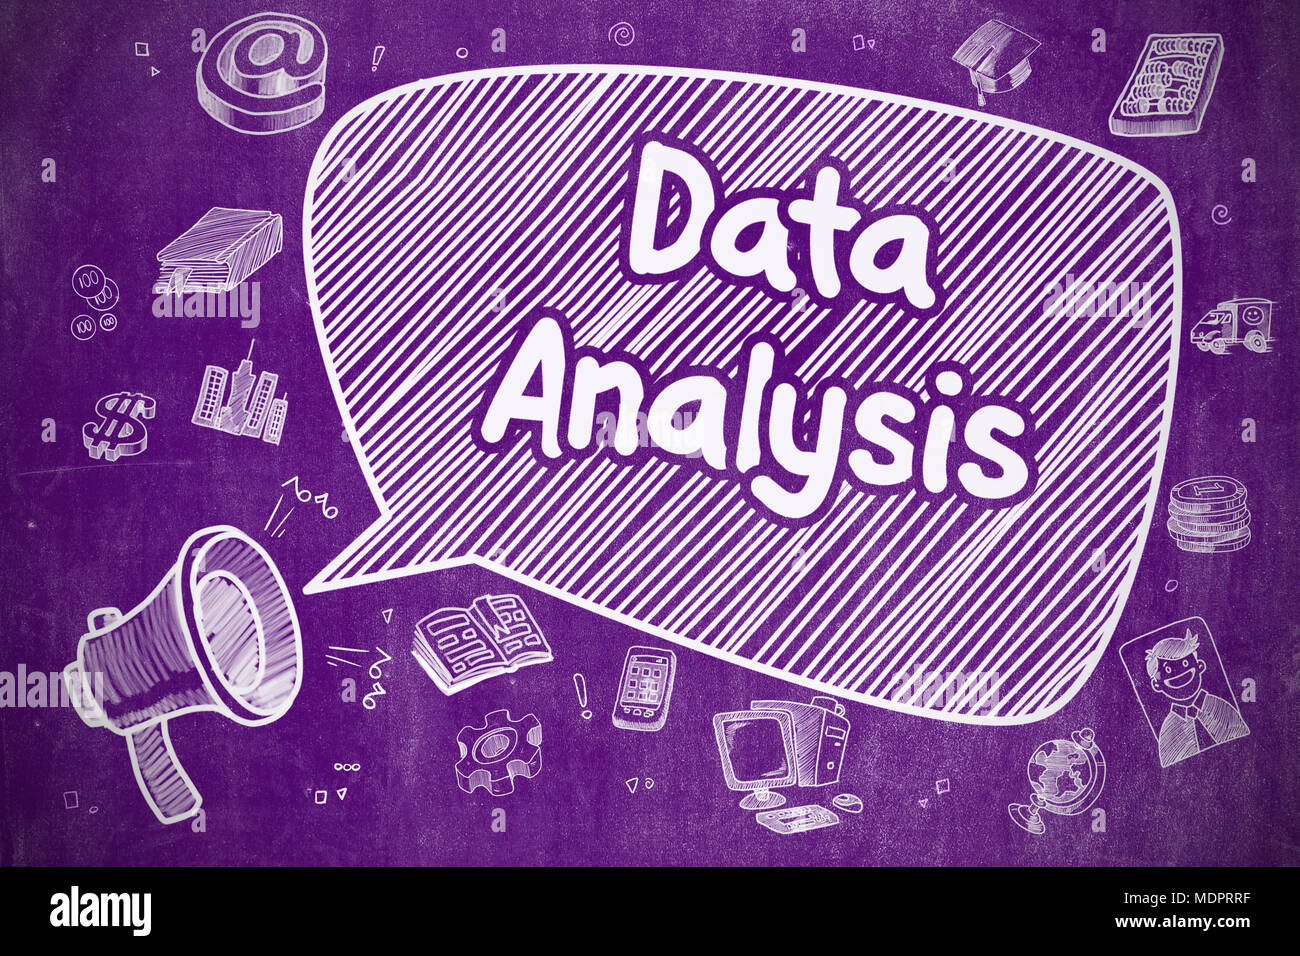 Data Analysis - Cartoon Illustration on Purple Chalkboard. Stock Photo